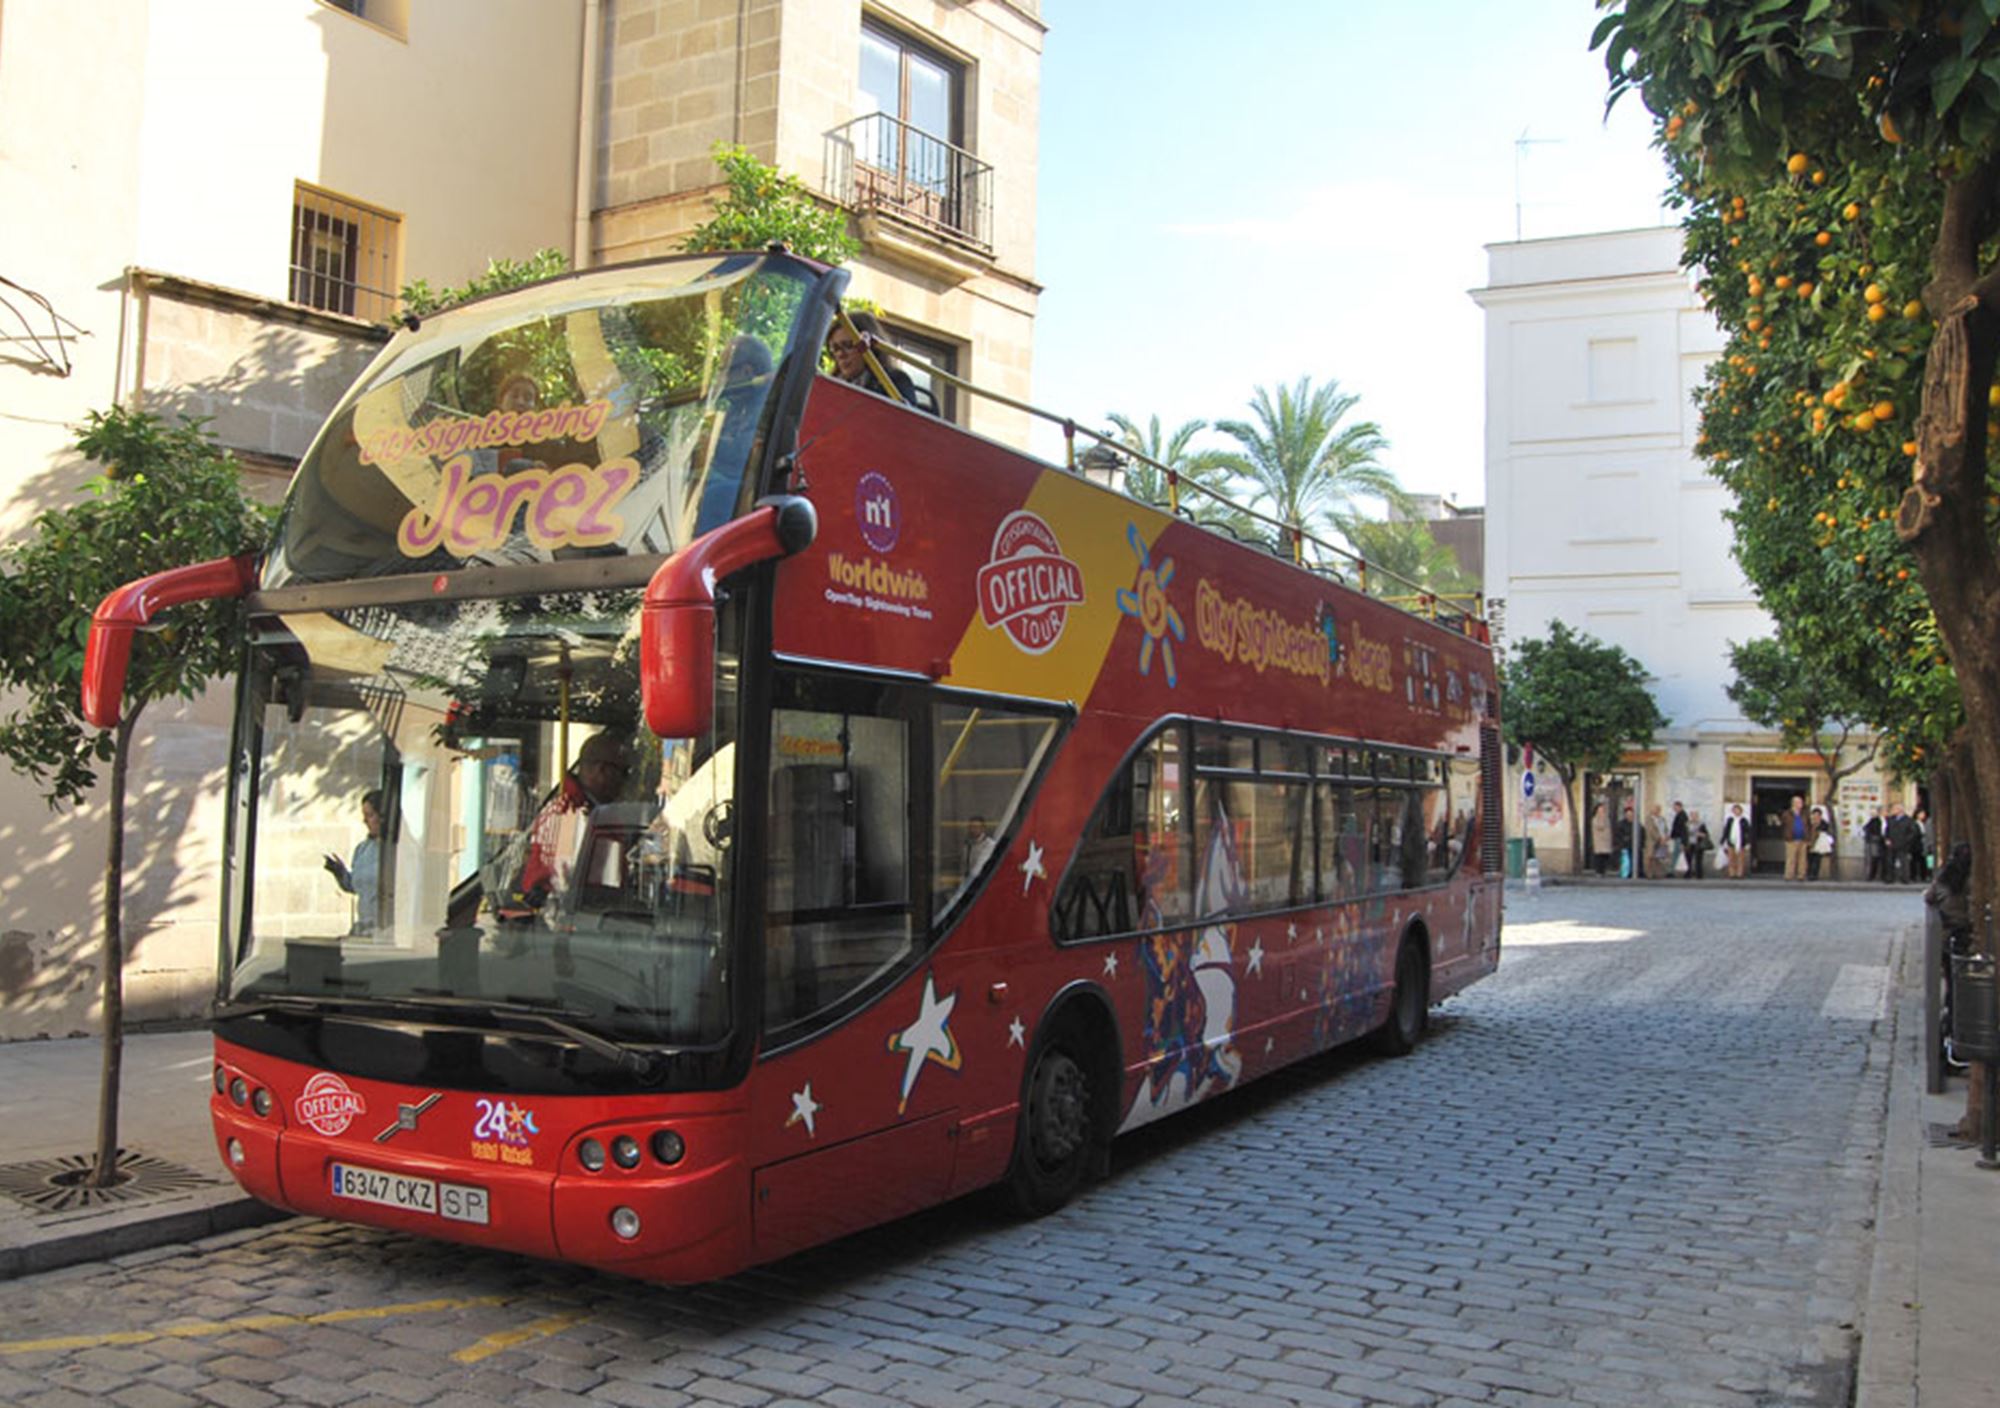 acheter réservations réserver visites guidées tours billets visiter Bus Touristique City Sightseeing Jerez de la Frontera